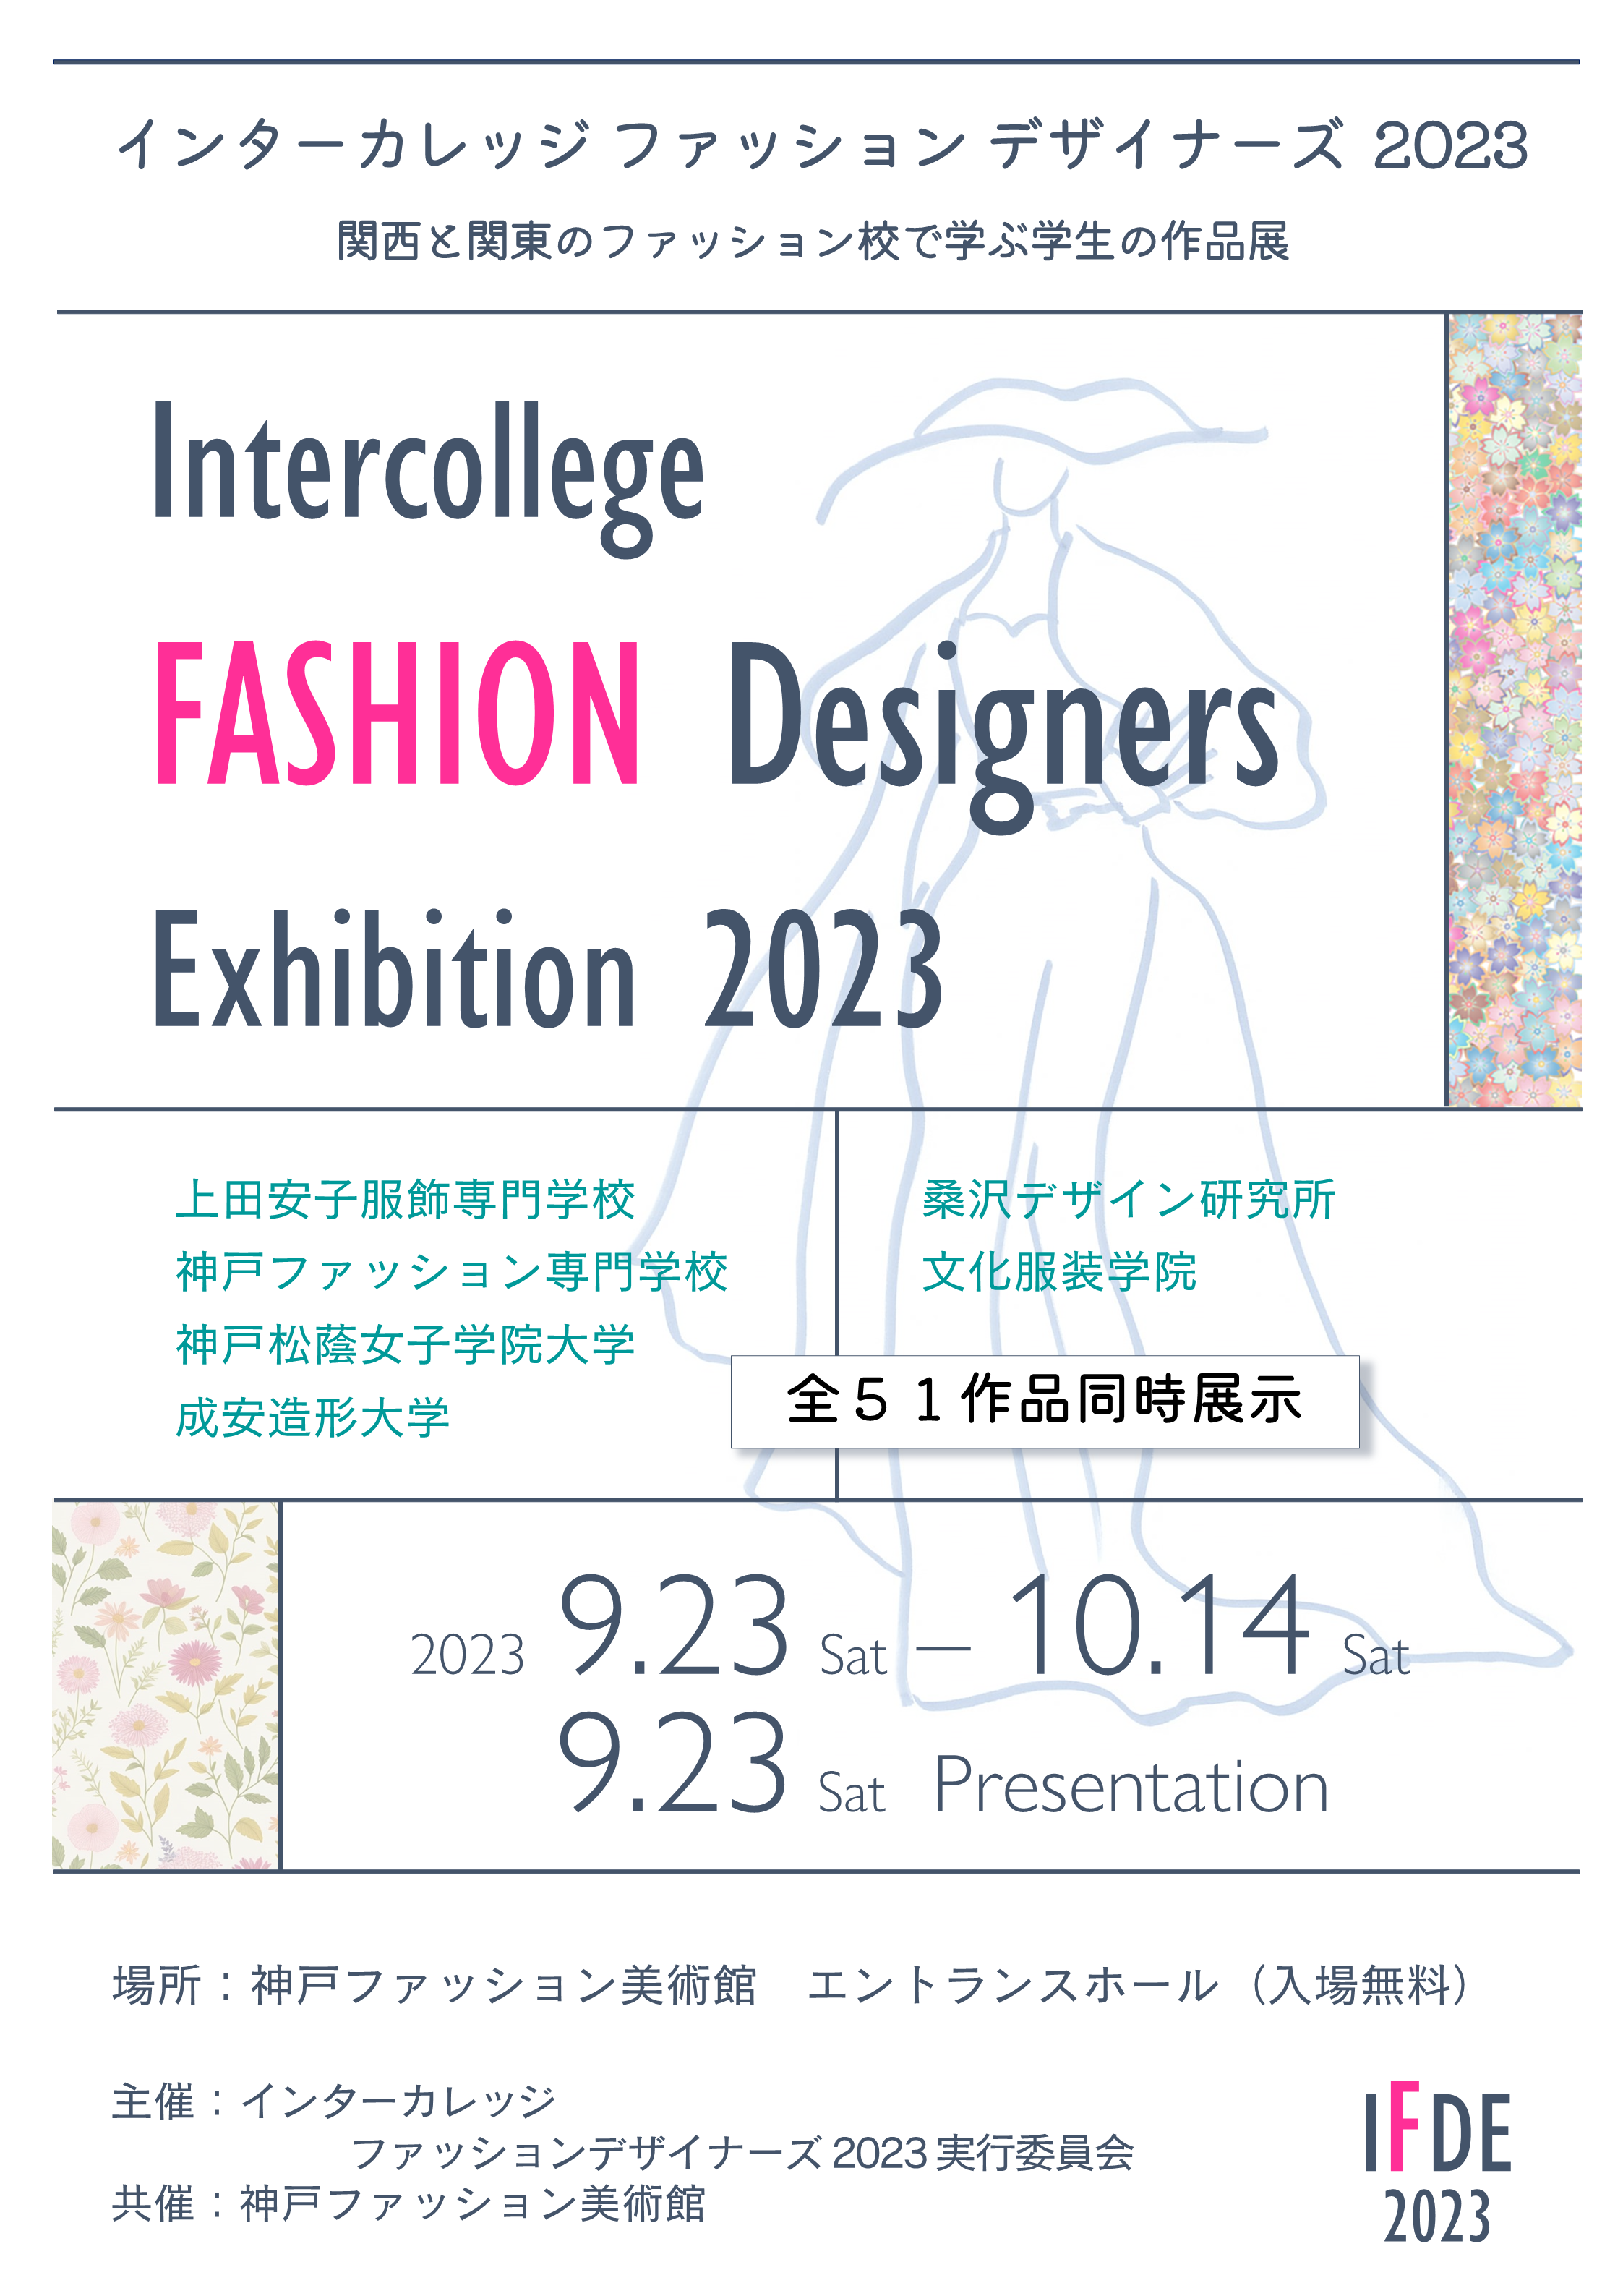 【エントランス展示】「インターカレッジ  ファッションデザイナーズ 2023」を展示中です！